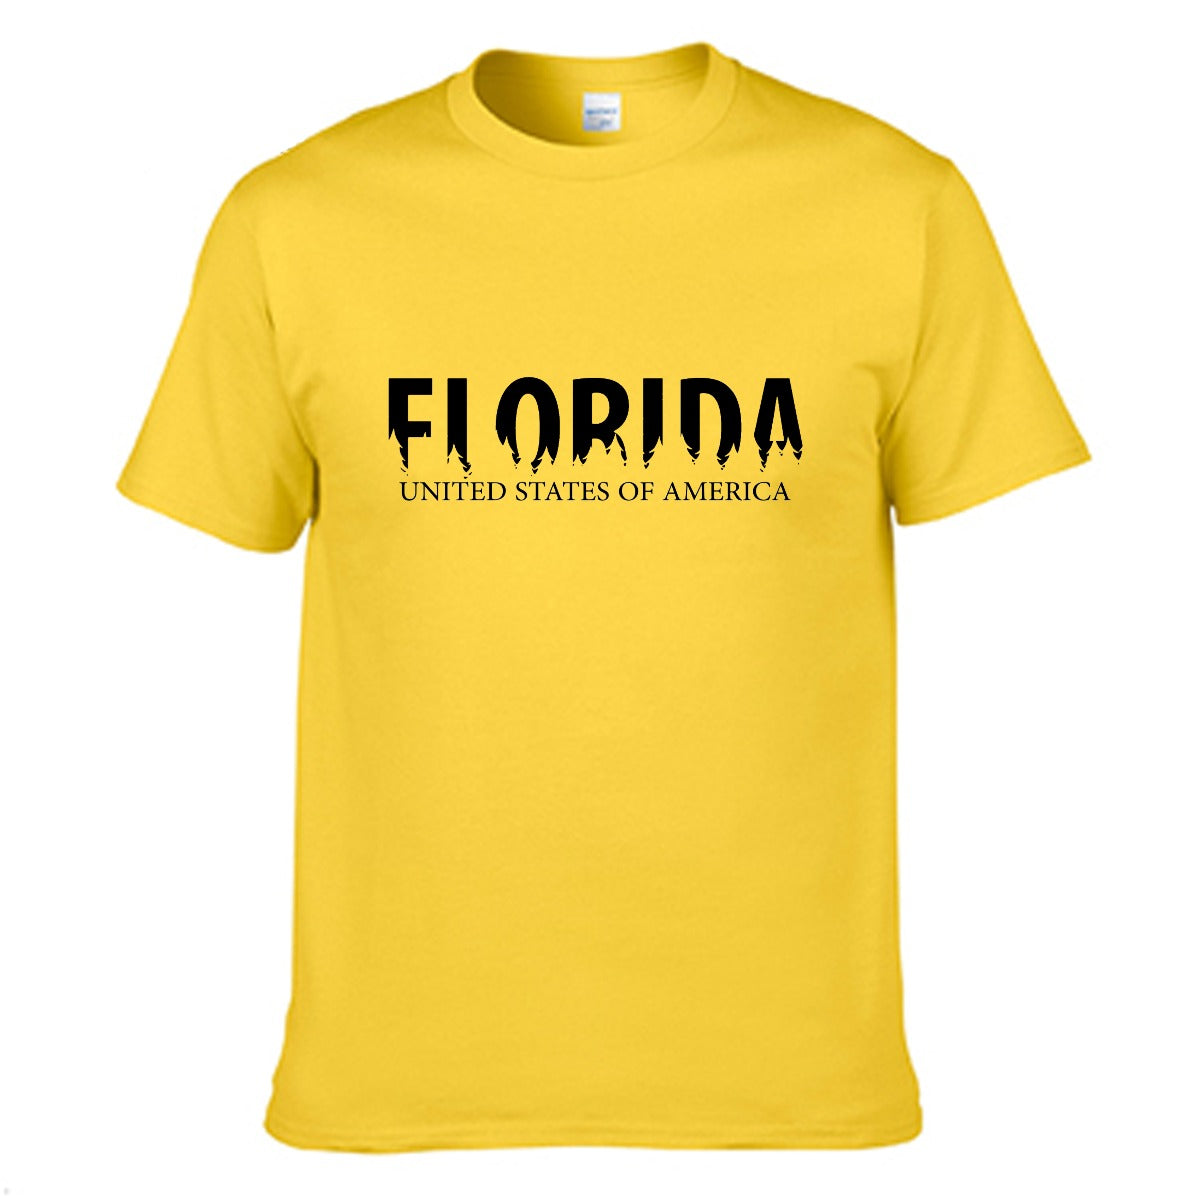 Florida Men's T-shirt (100% Cotton) - T0360